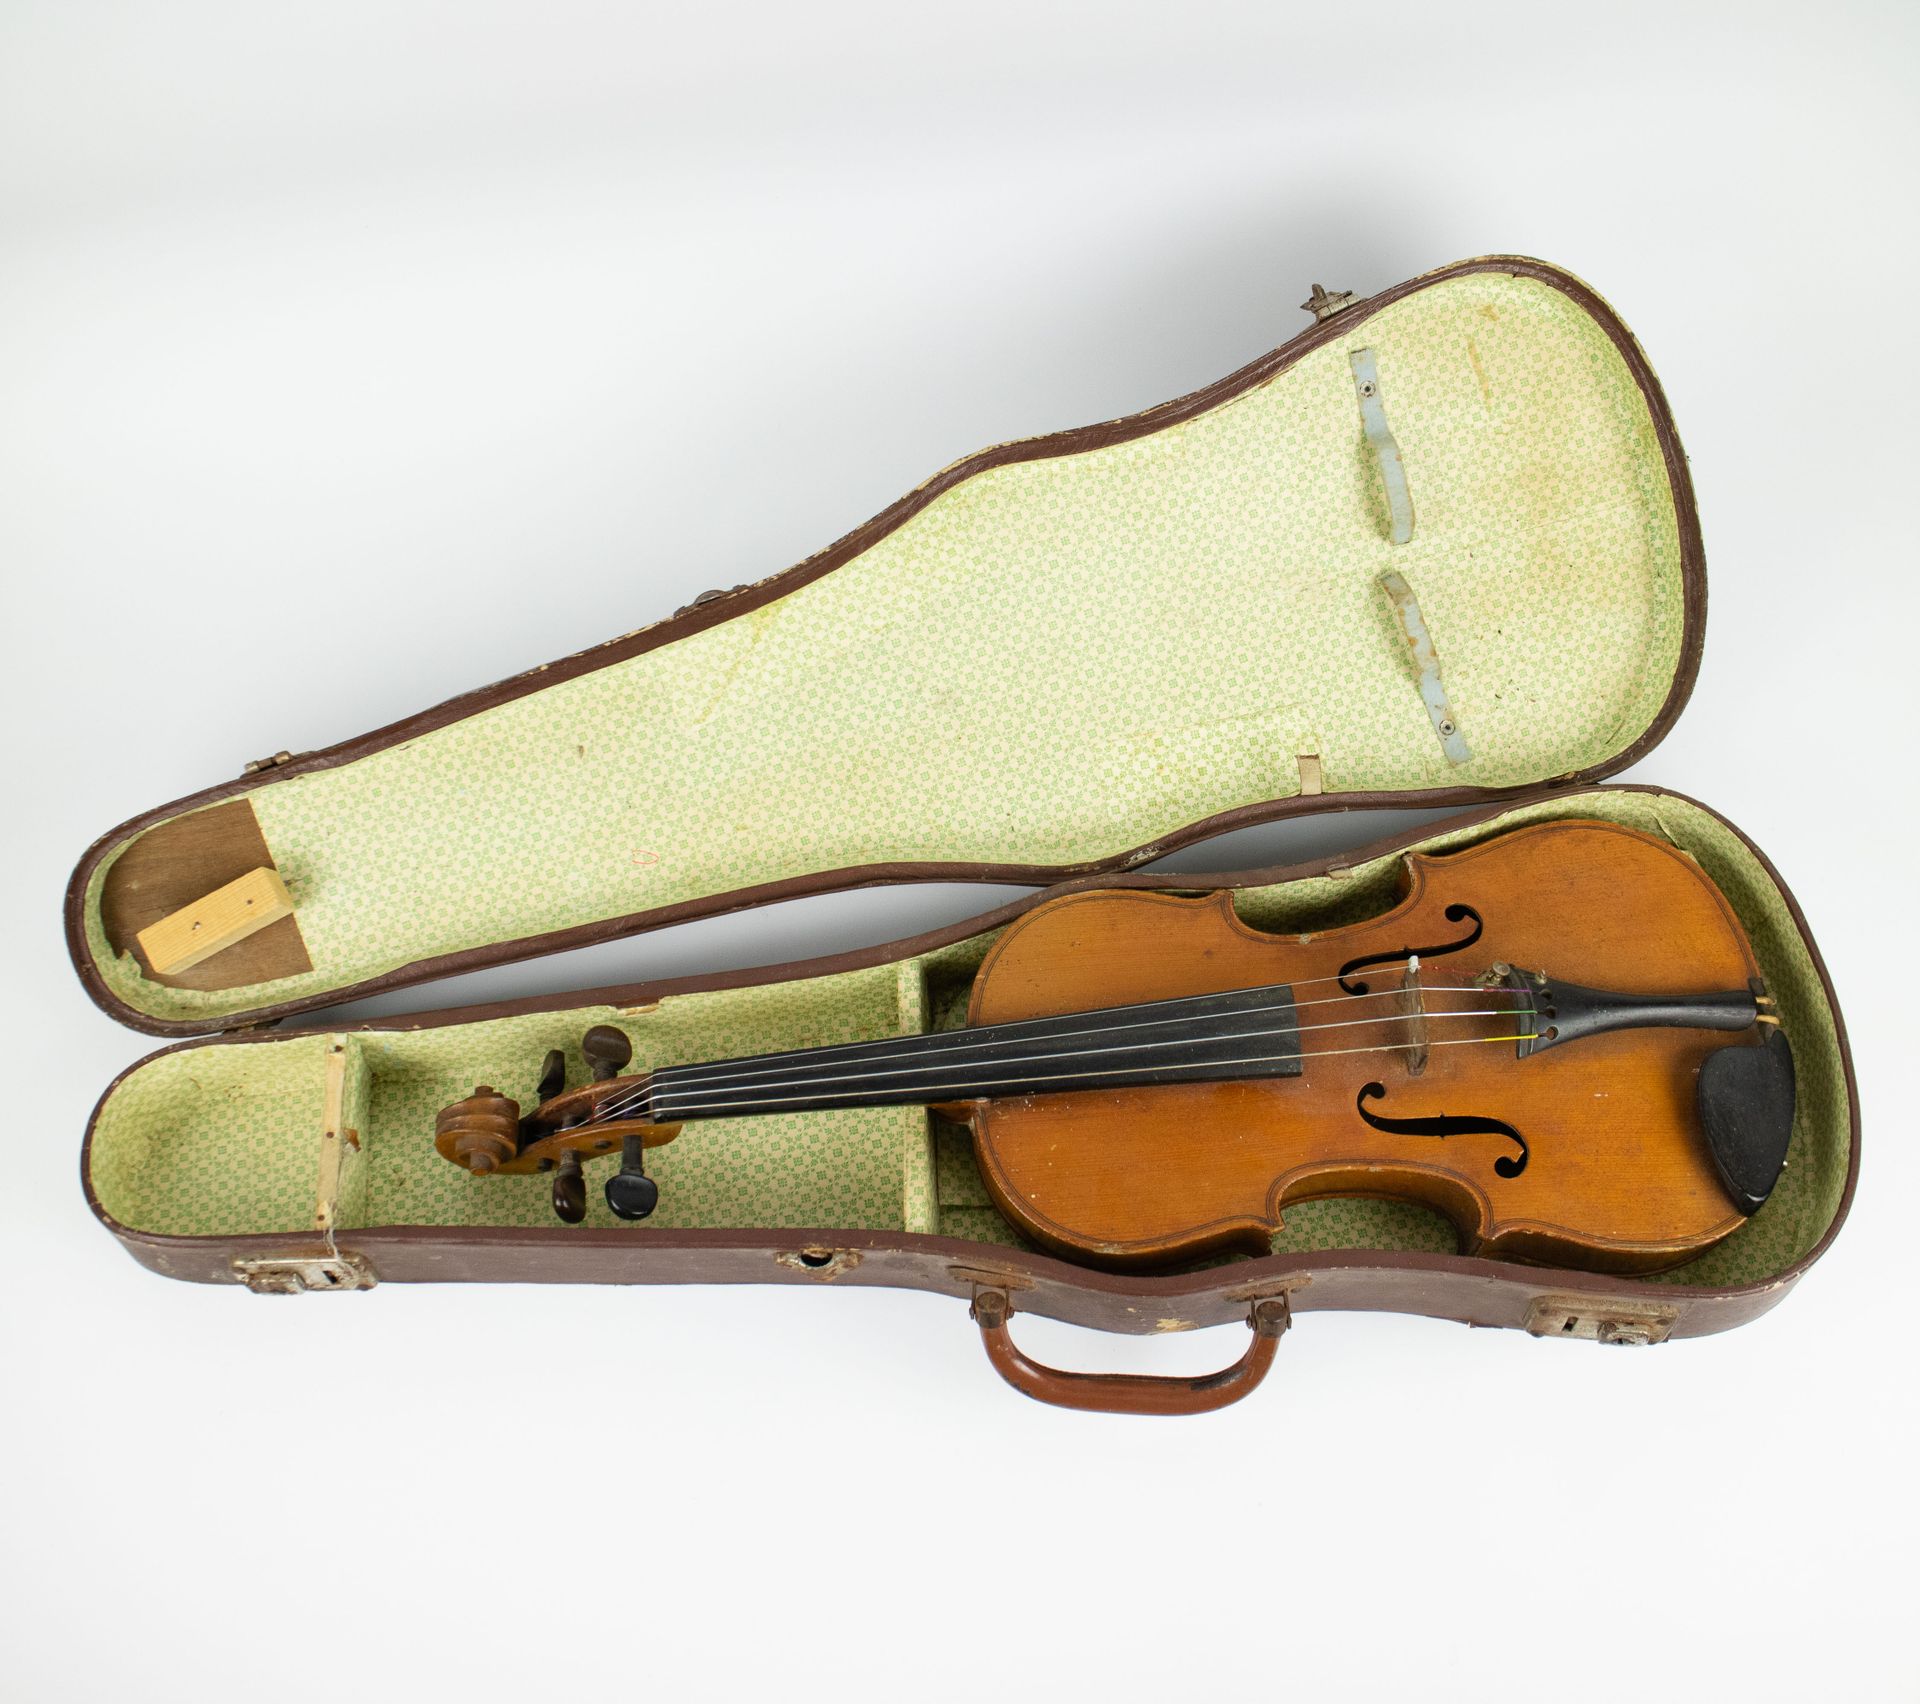 Violin 4/4 with case Viool 4/4 met kist.
长59厘米